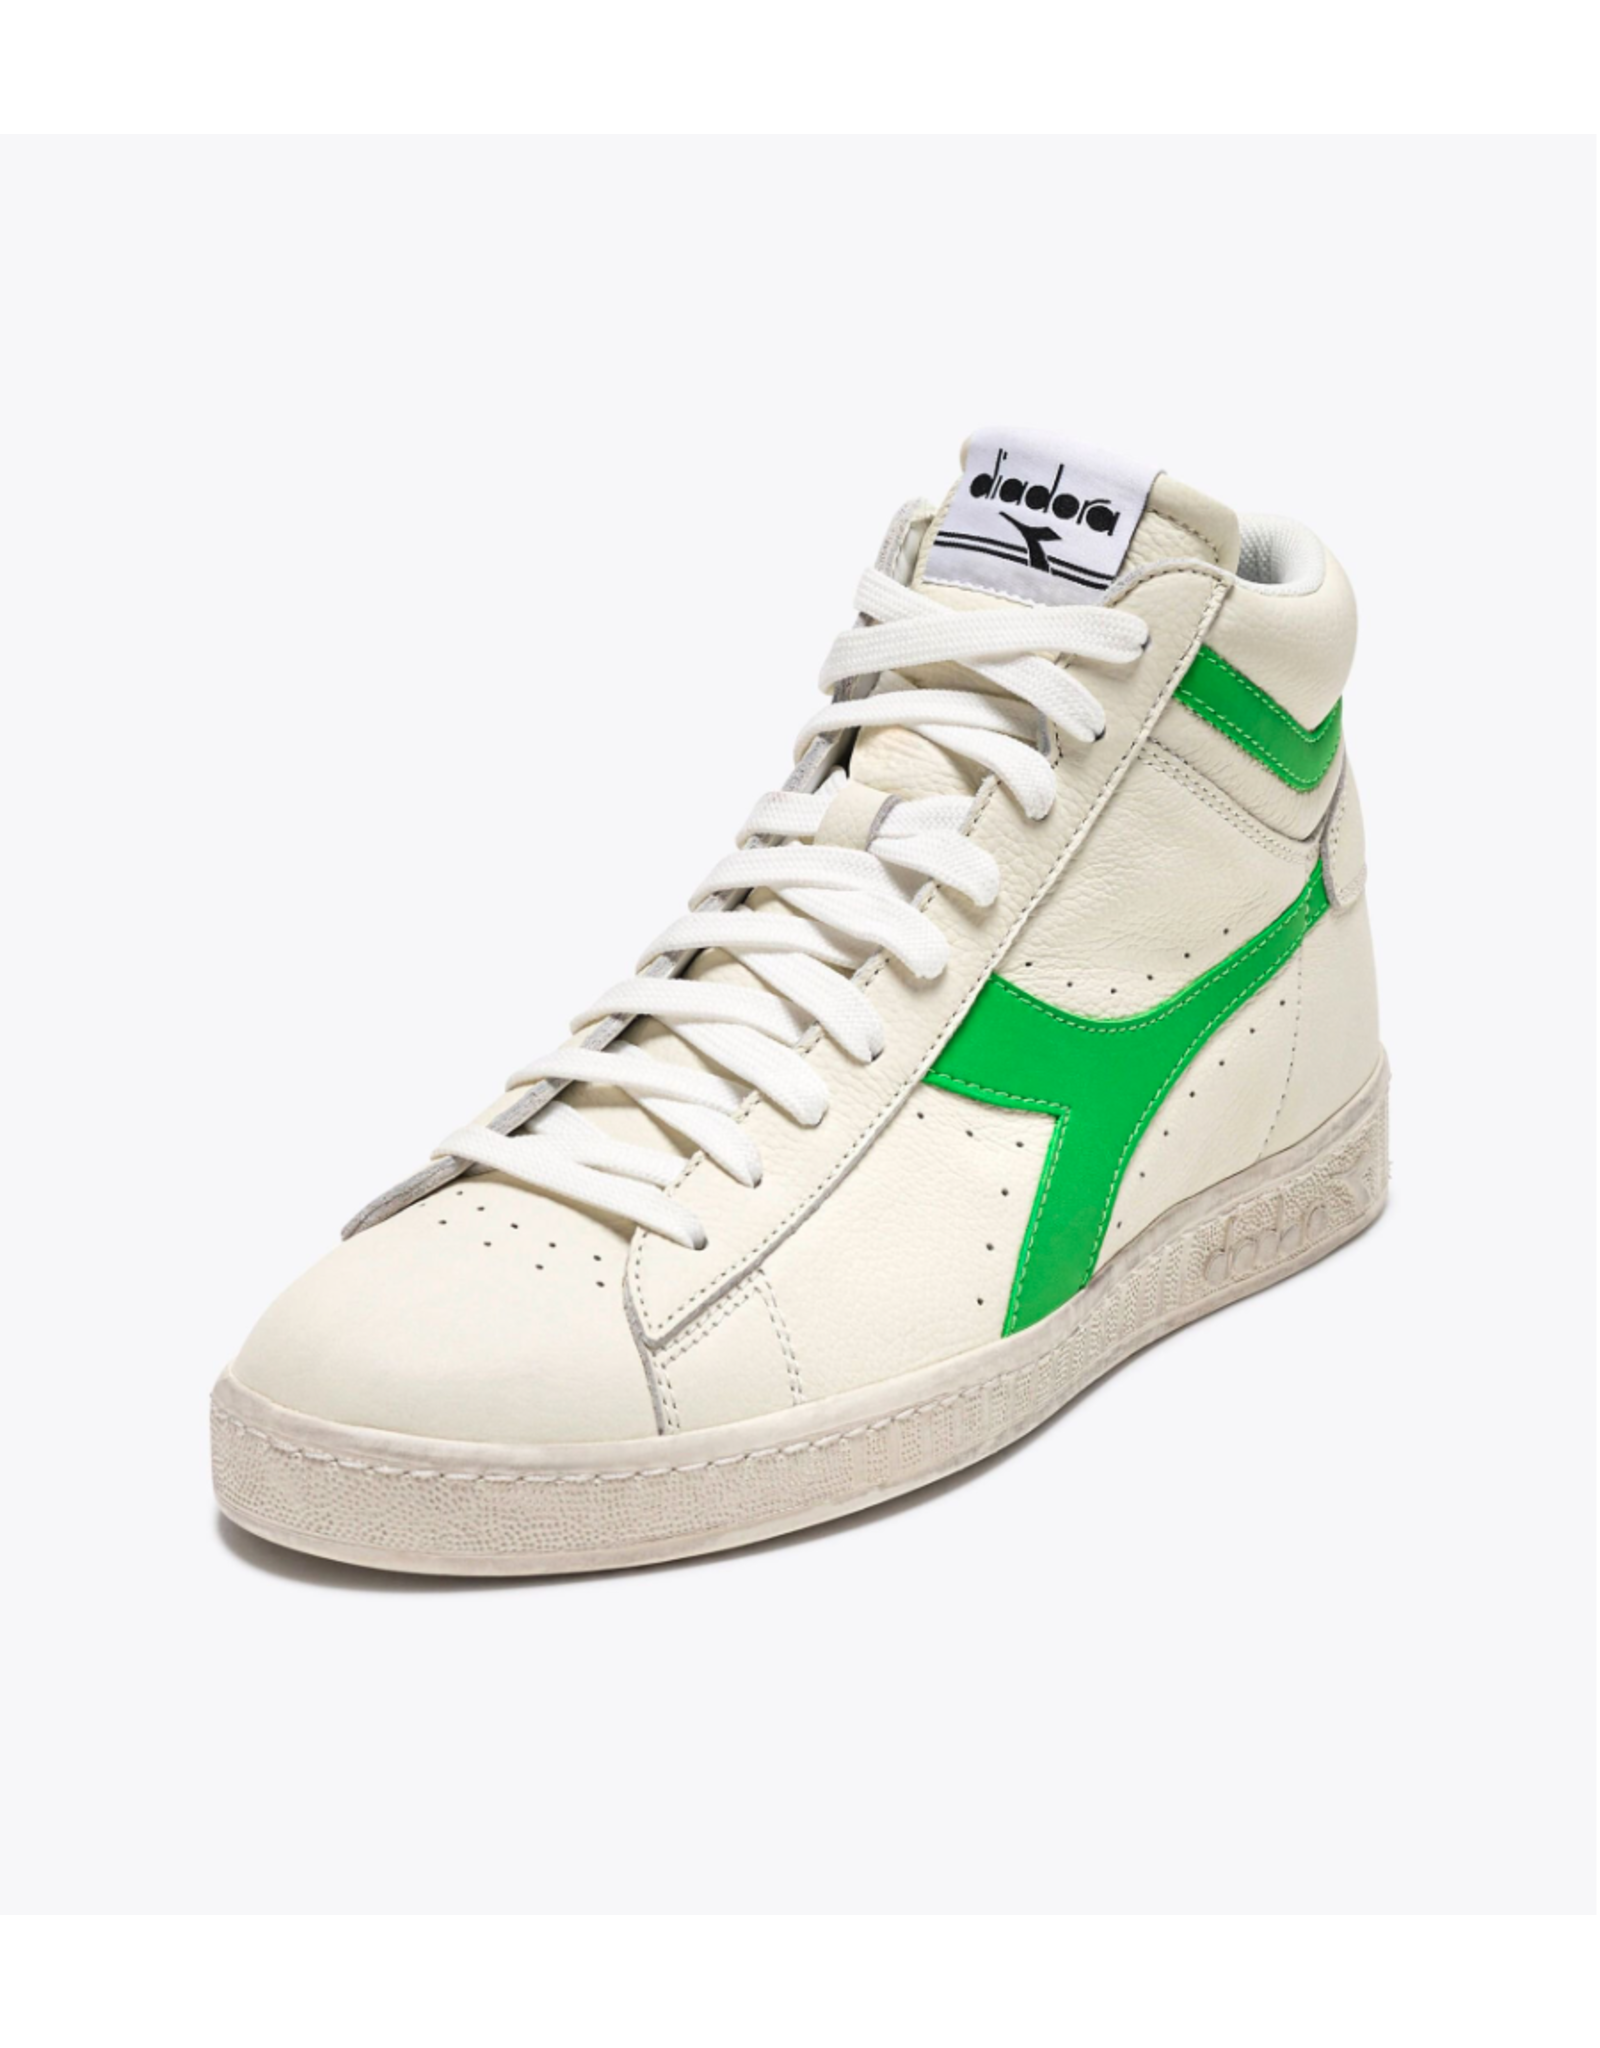 Diadora Sneaker Game high fluo white / green